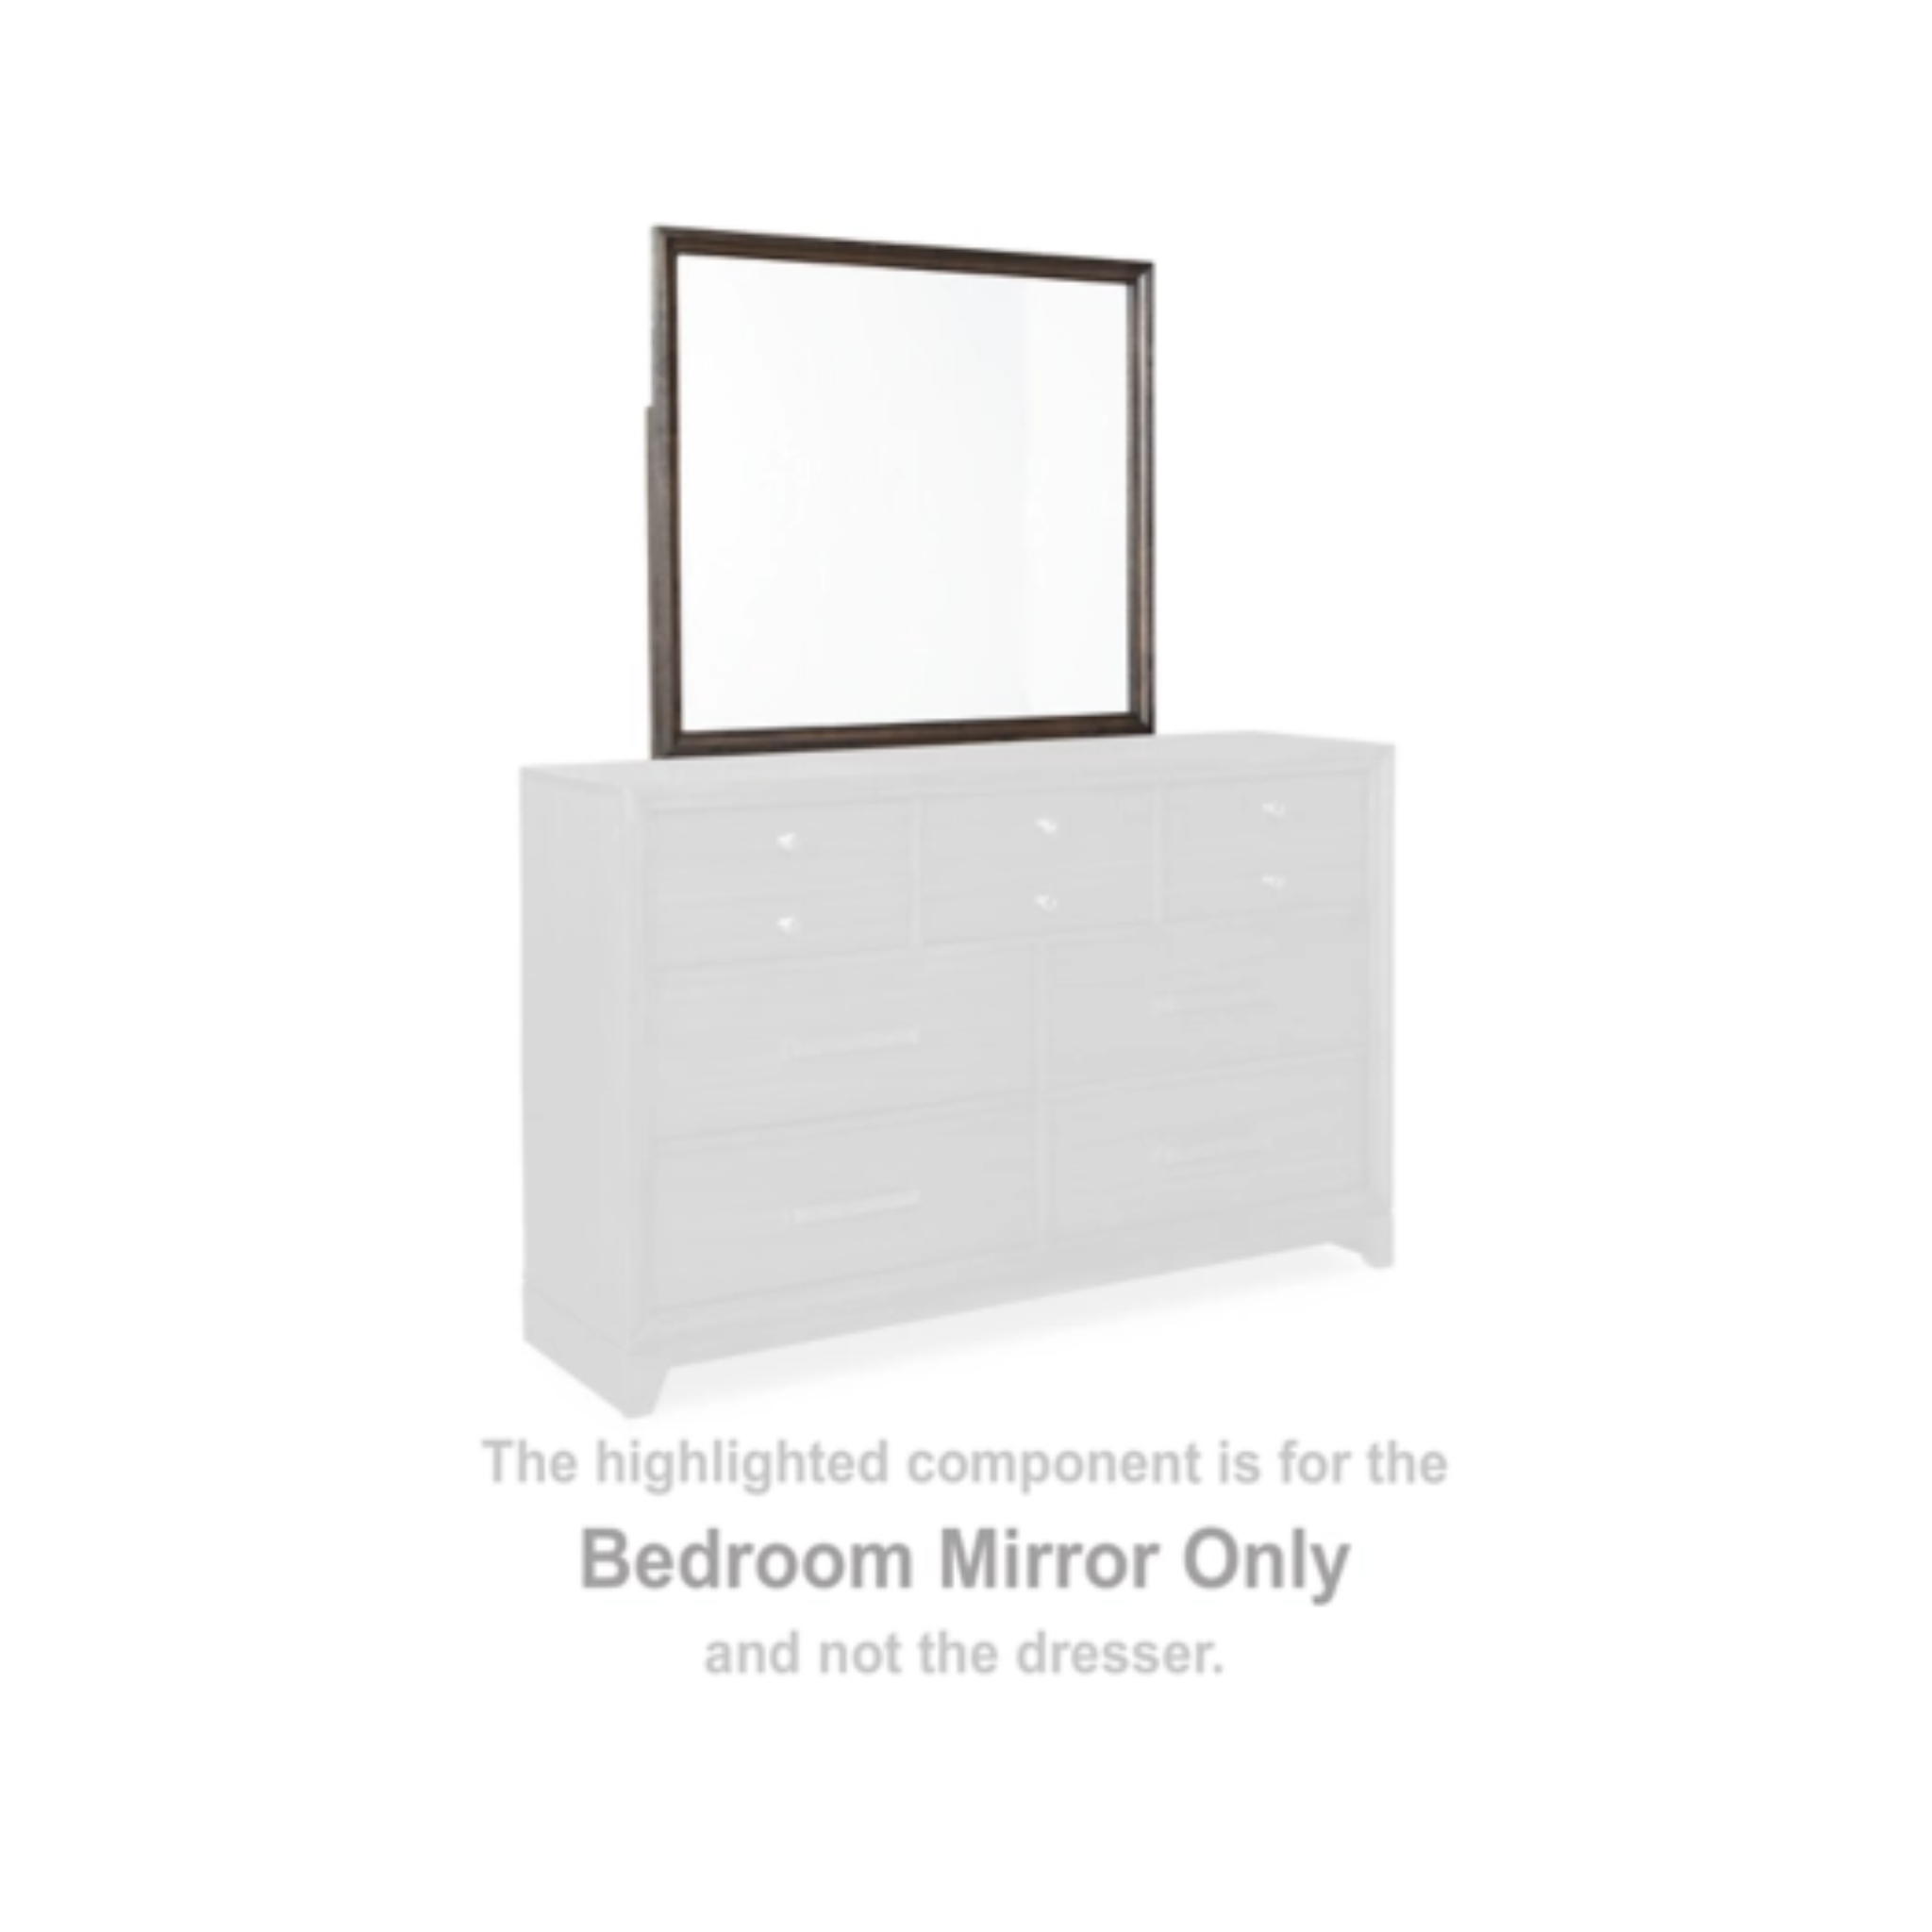 Brueban Bedroom Mirror